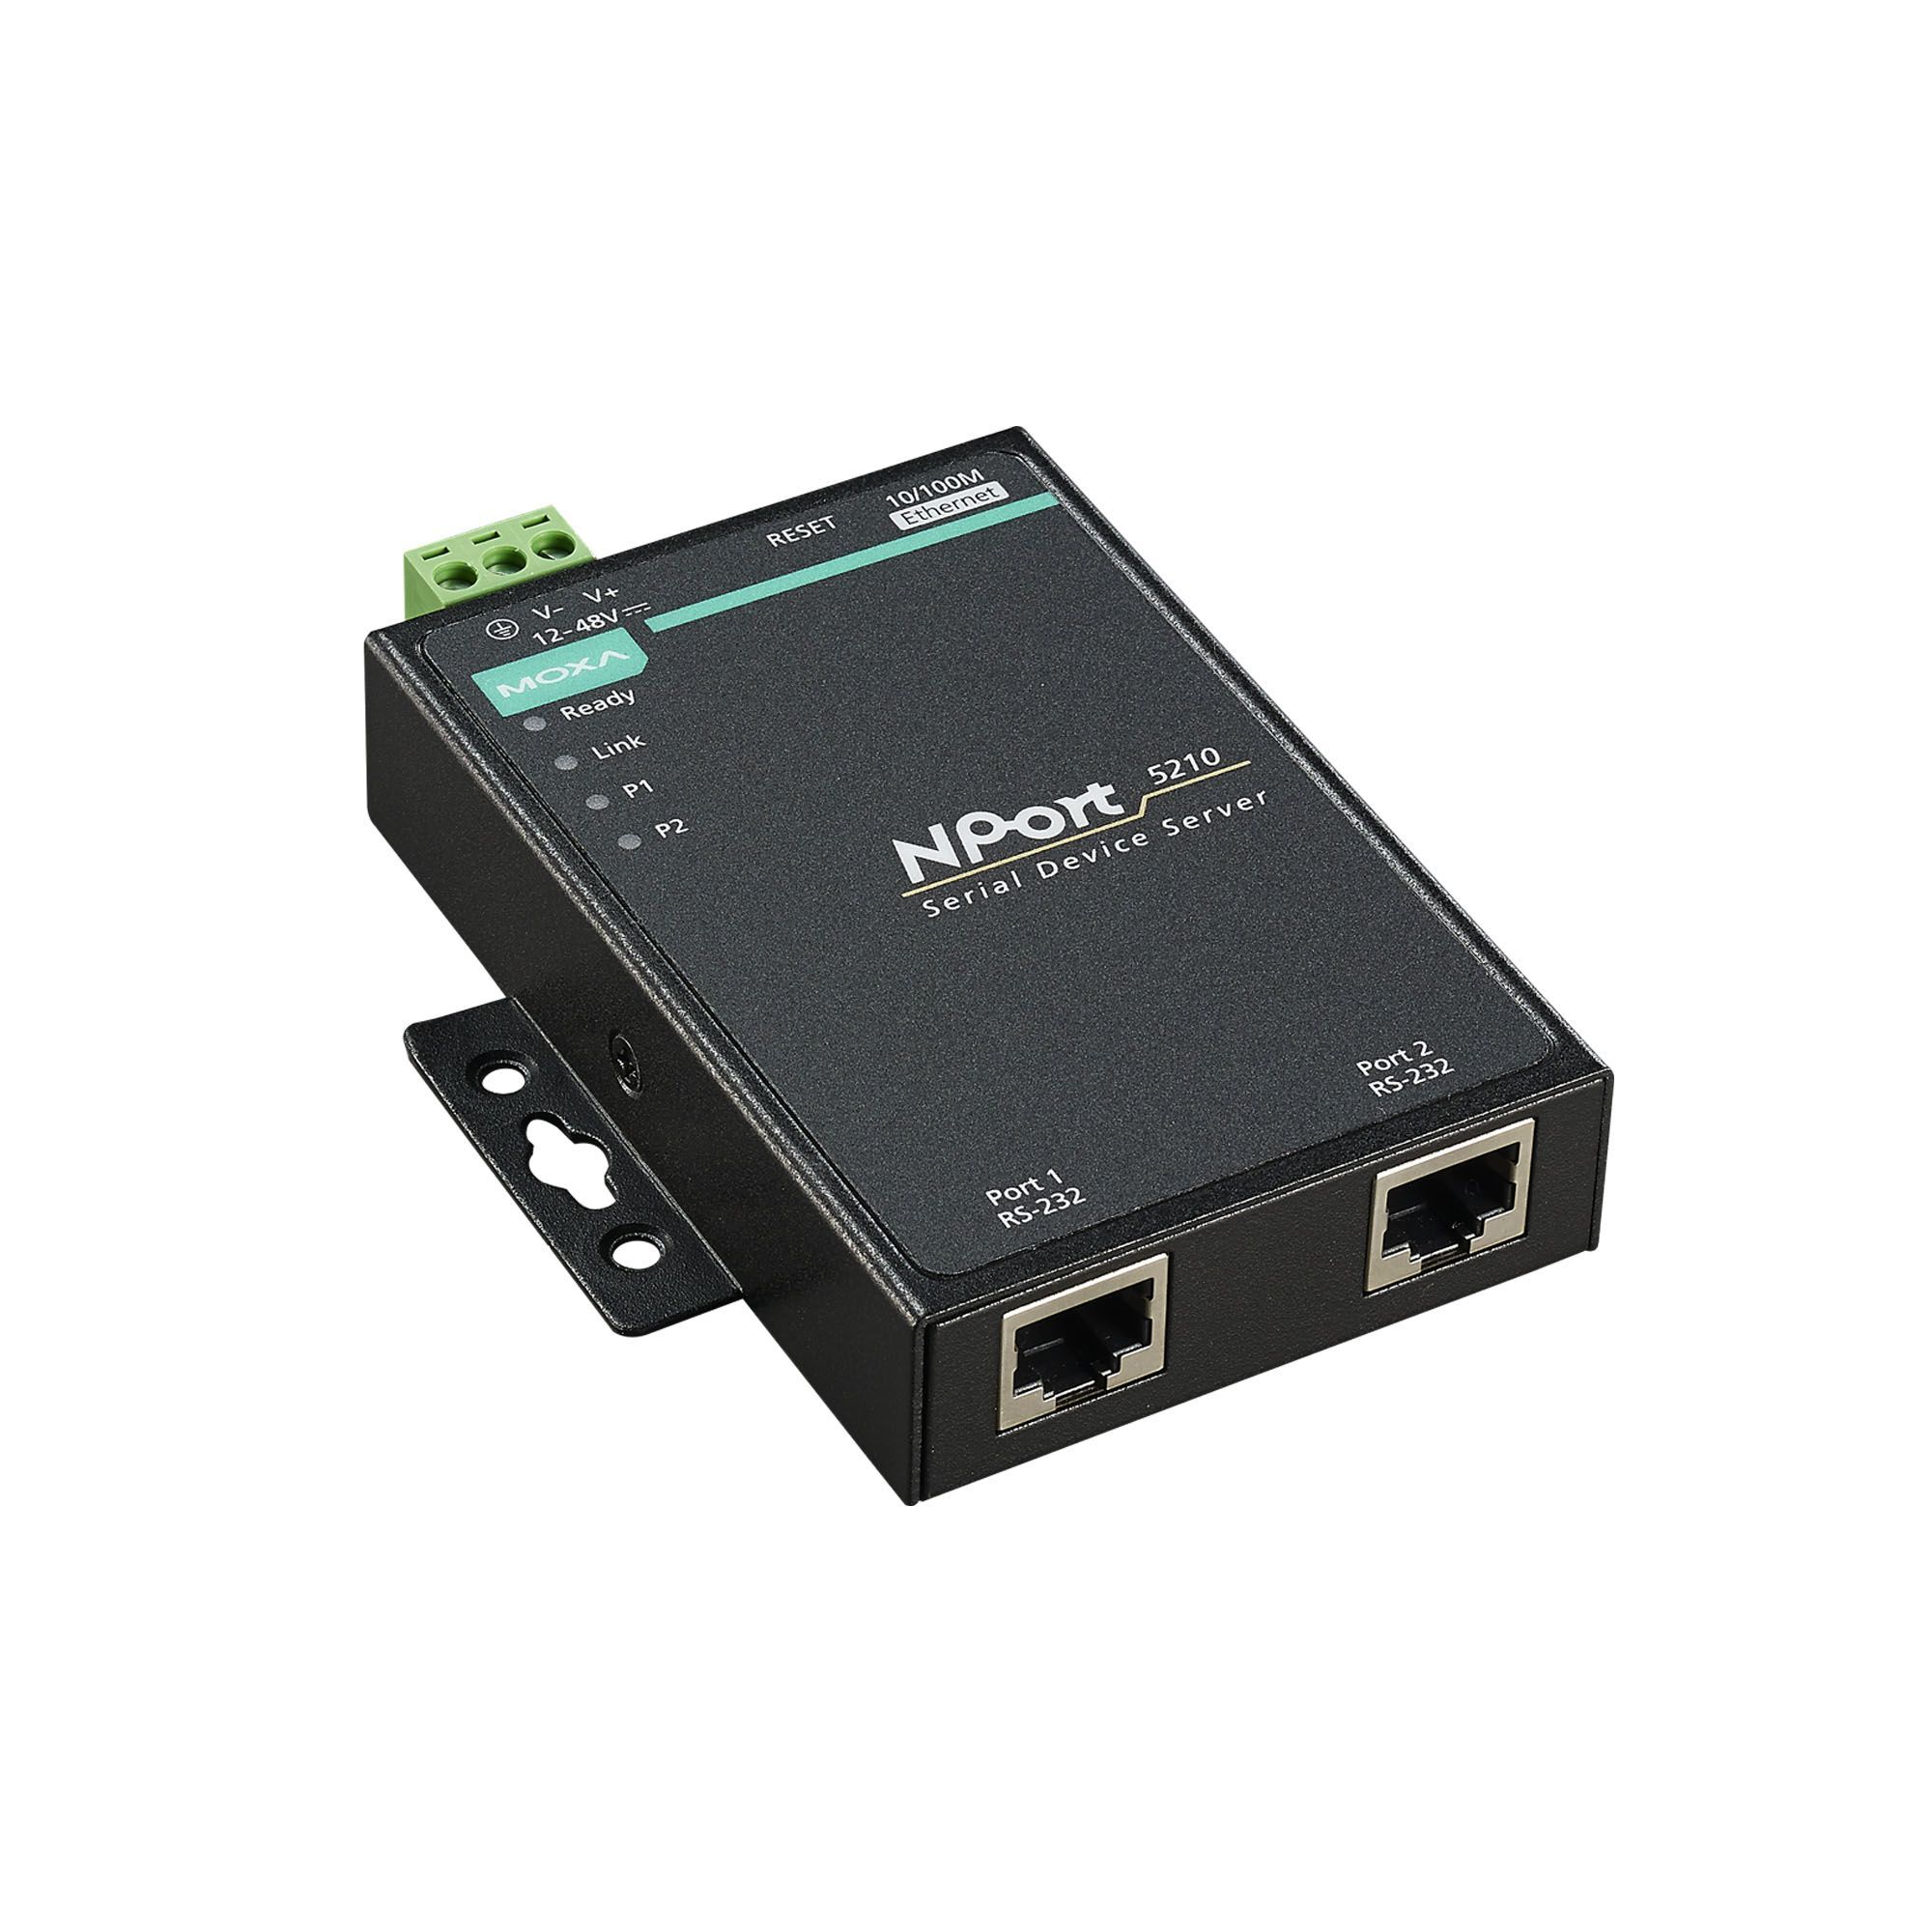 Серверное оборудование Moxa NPort 5210